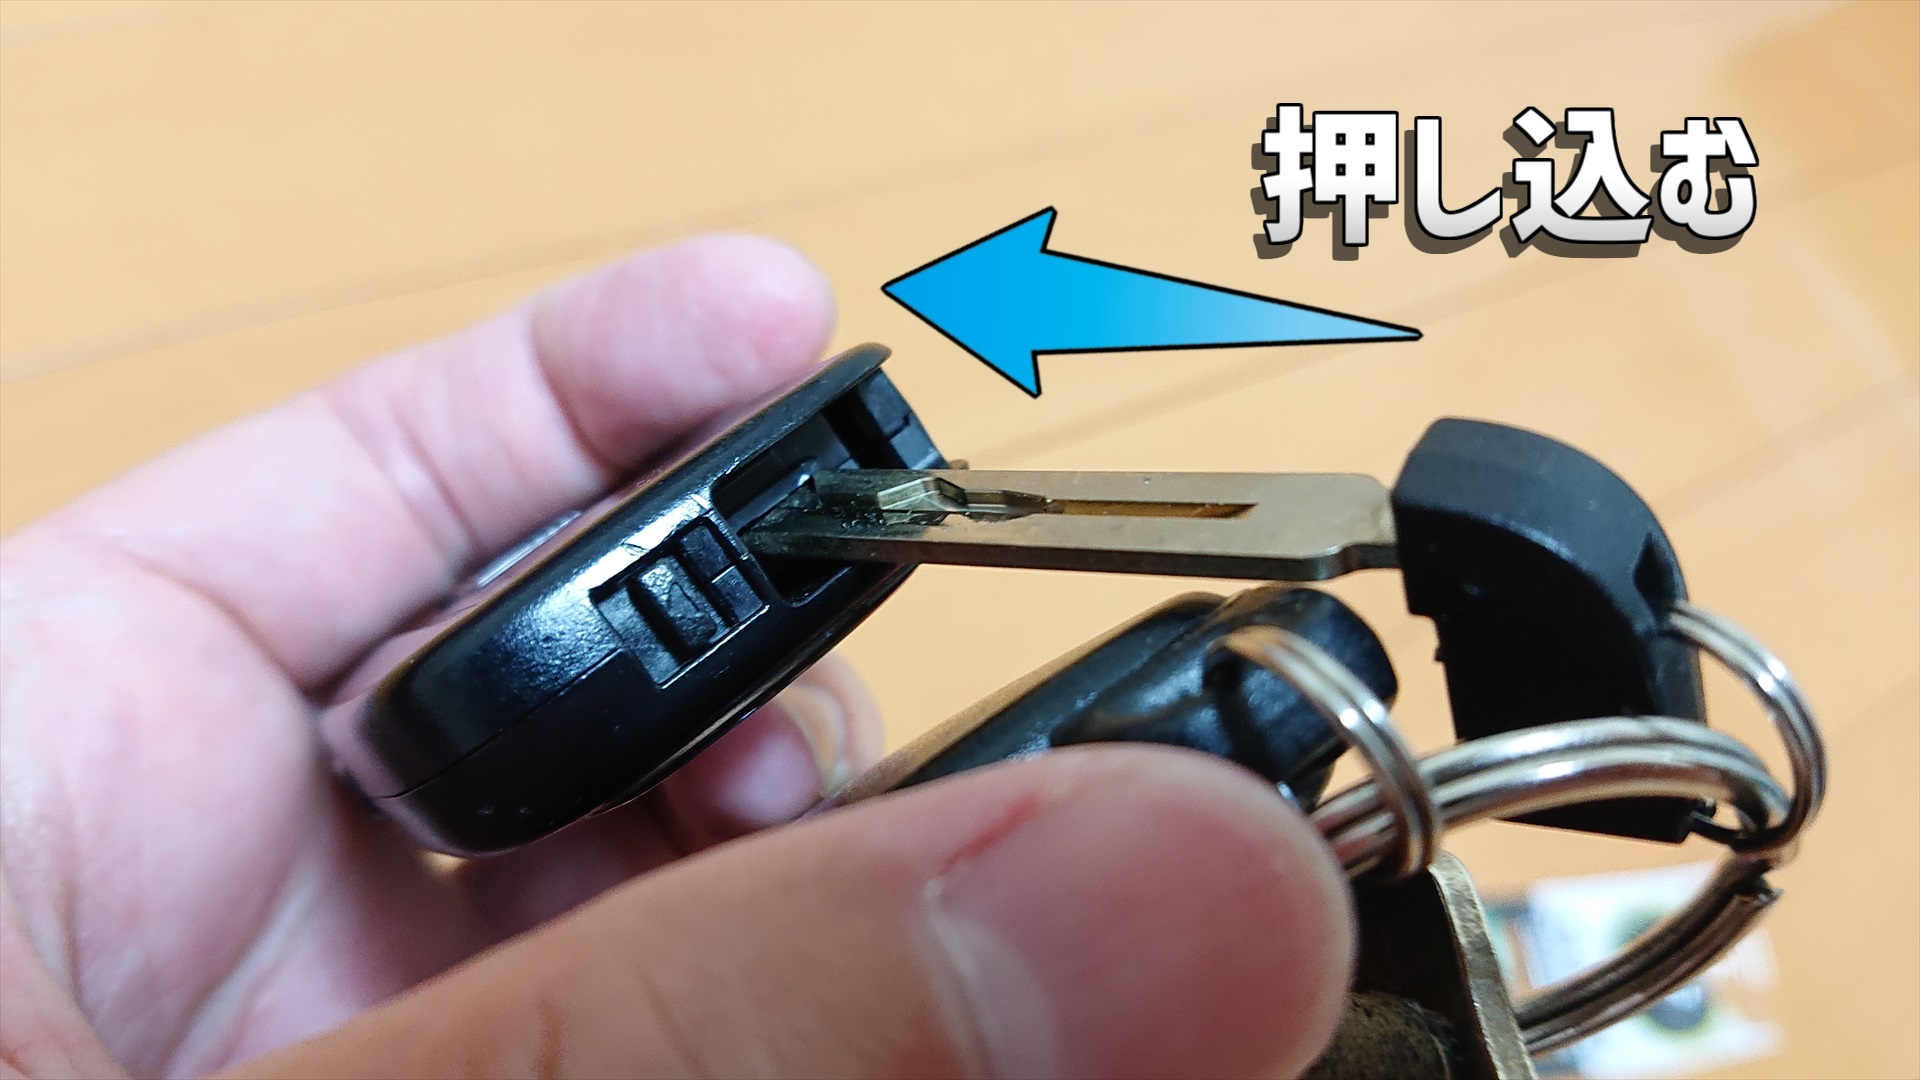 引き抜いた所にキーを差し込む穴がありますので、そこにグッと押し込みます。押し込むことでキー本体が半分にぱかっと開く仕組みになっています。